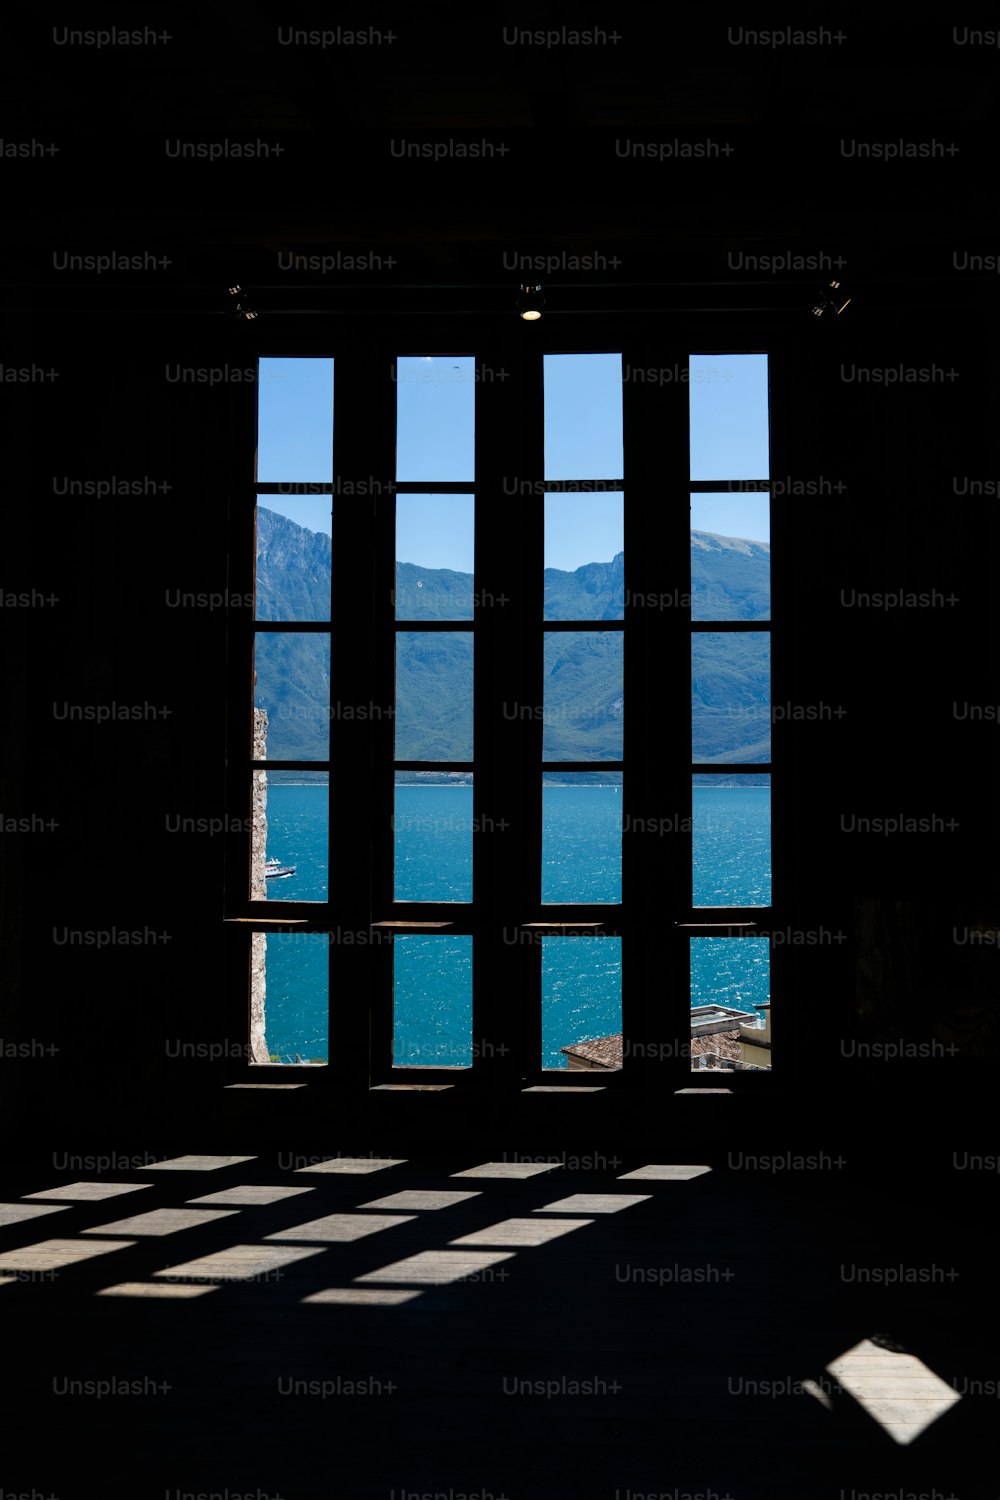 una ventana con vistas a un lago y montañas